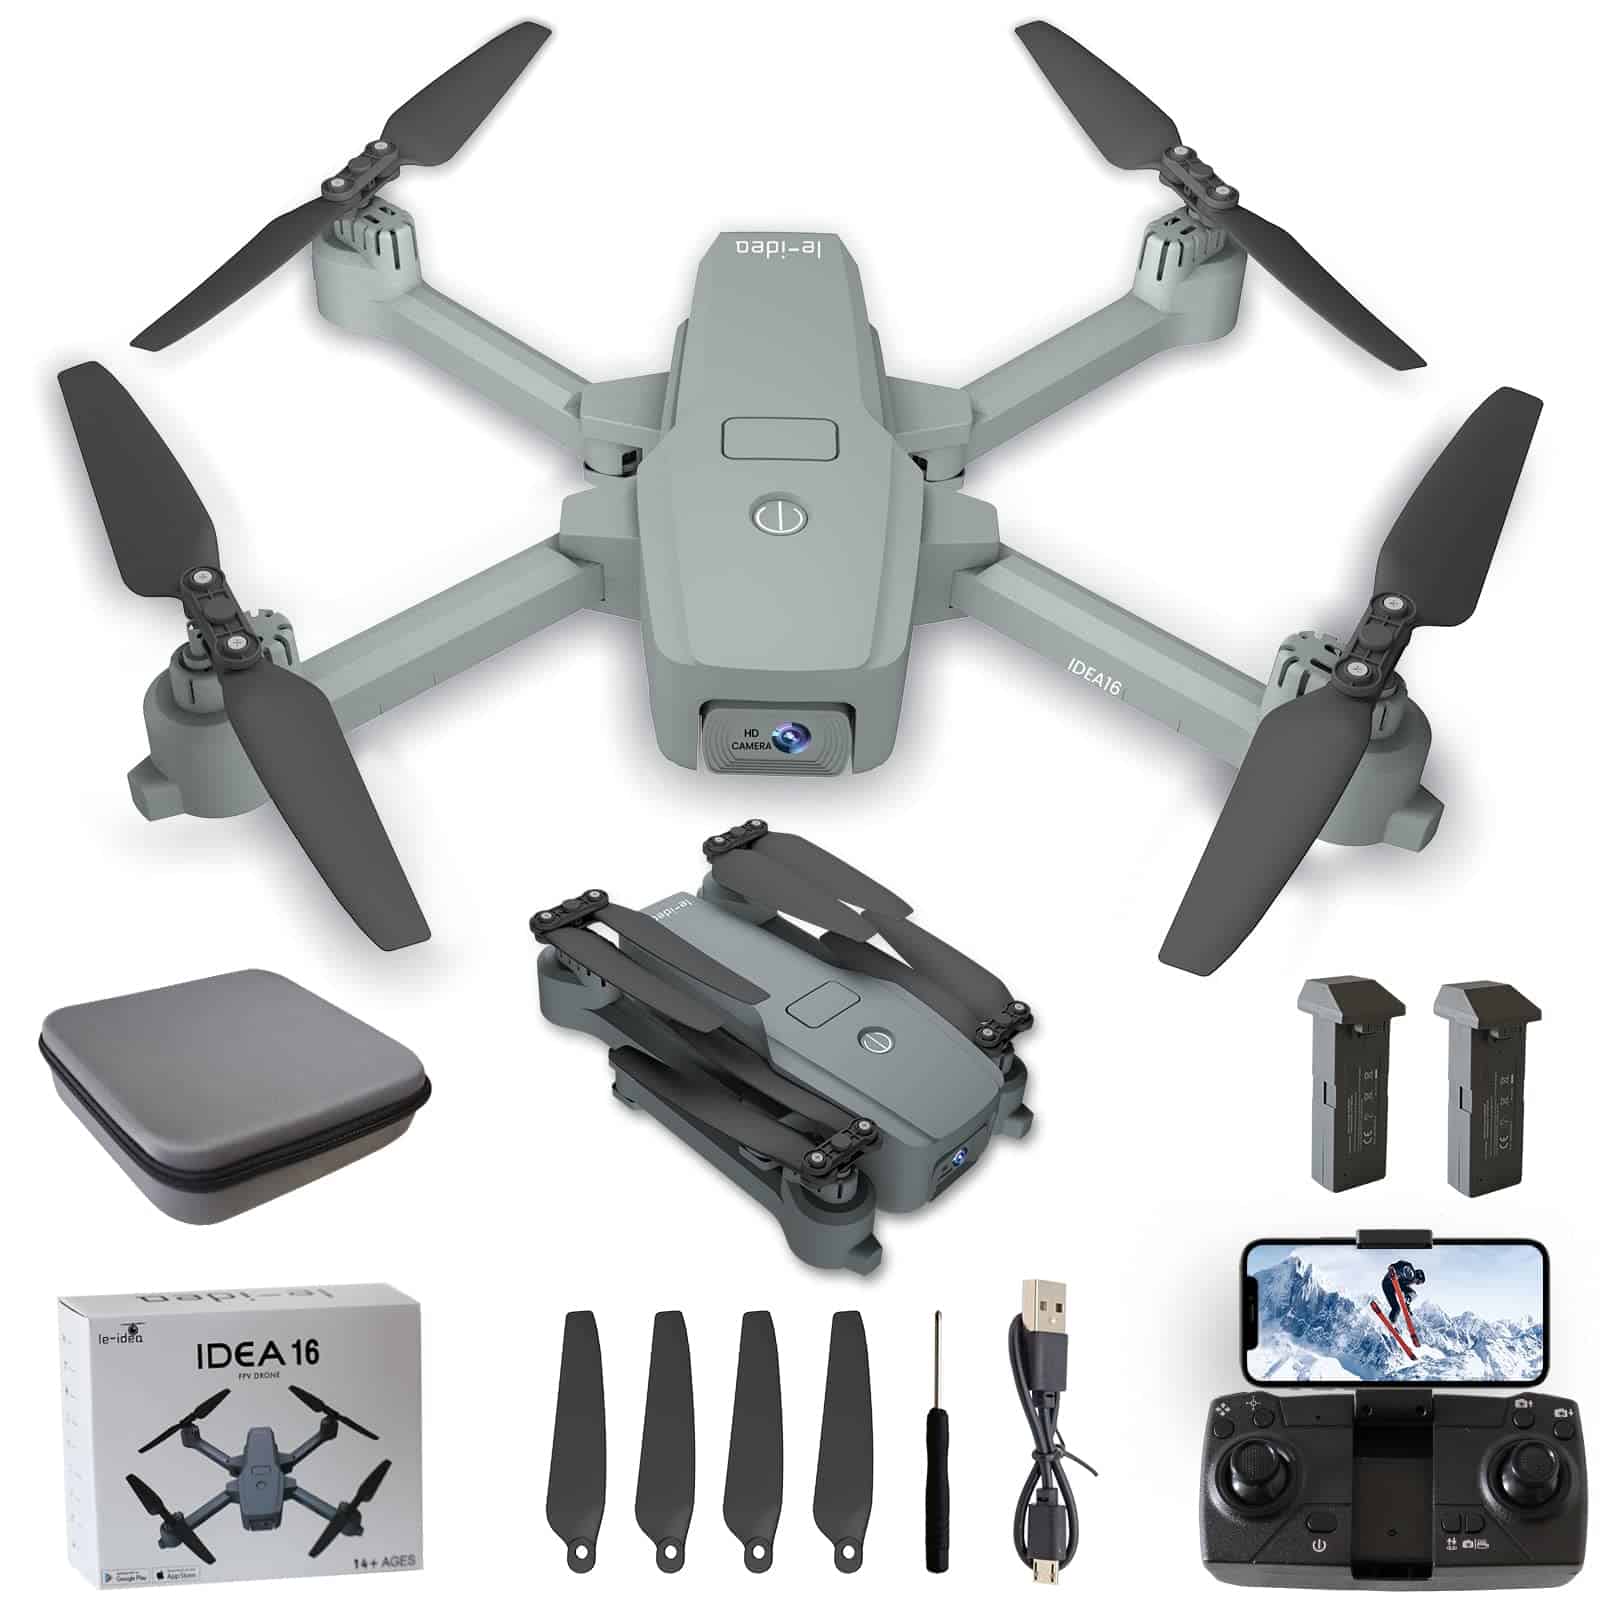 Me voy a comprar un drone, ¿con cámara integrada o instalo una después?